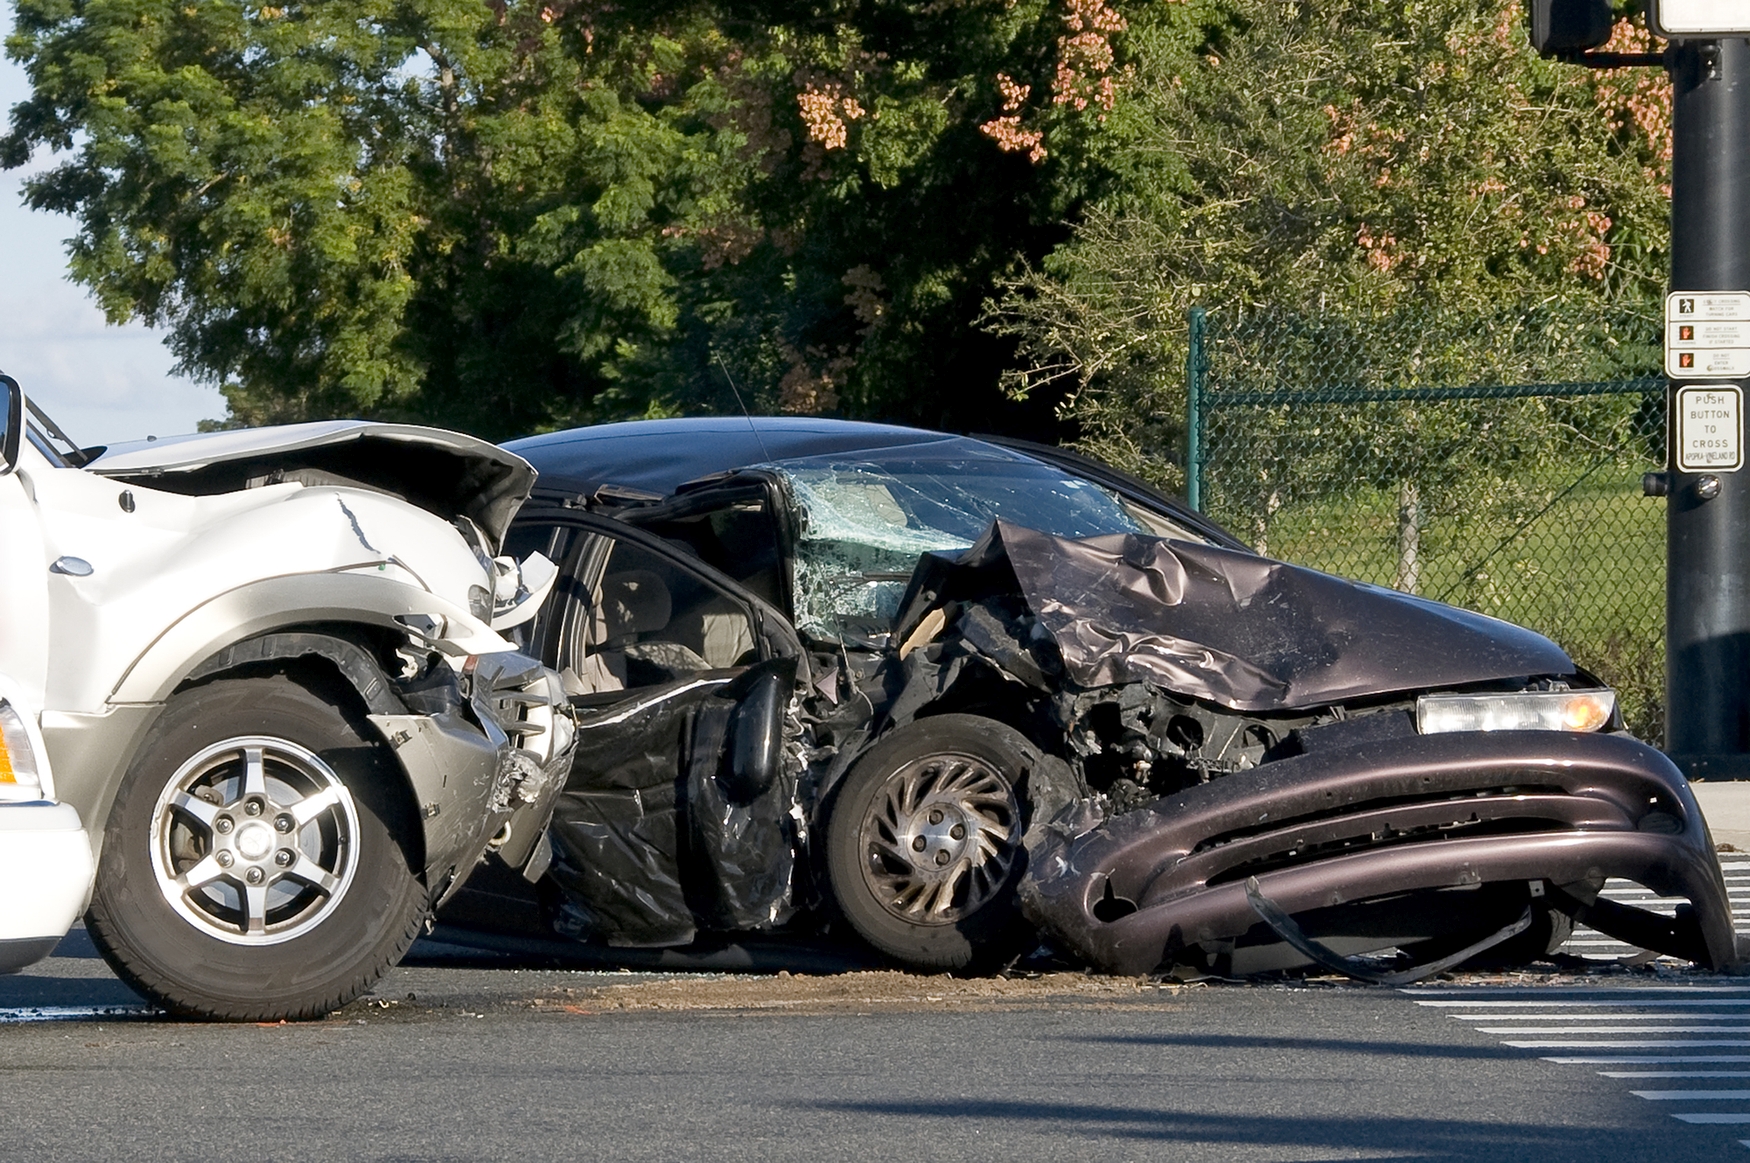 Incidenti stradali:  analisi, proposte di miglioramento, azioni di sensibilizzazione per le aziende